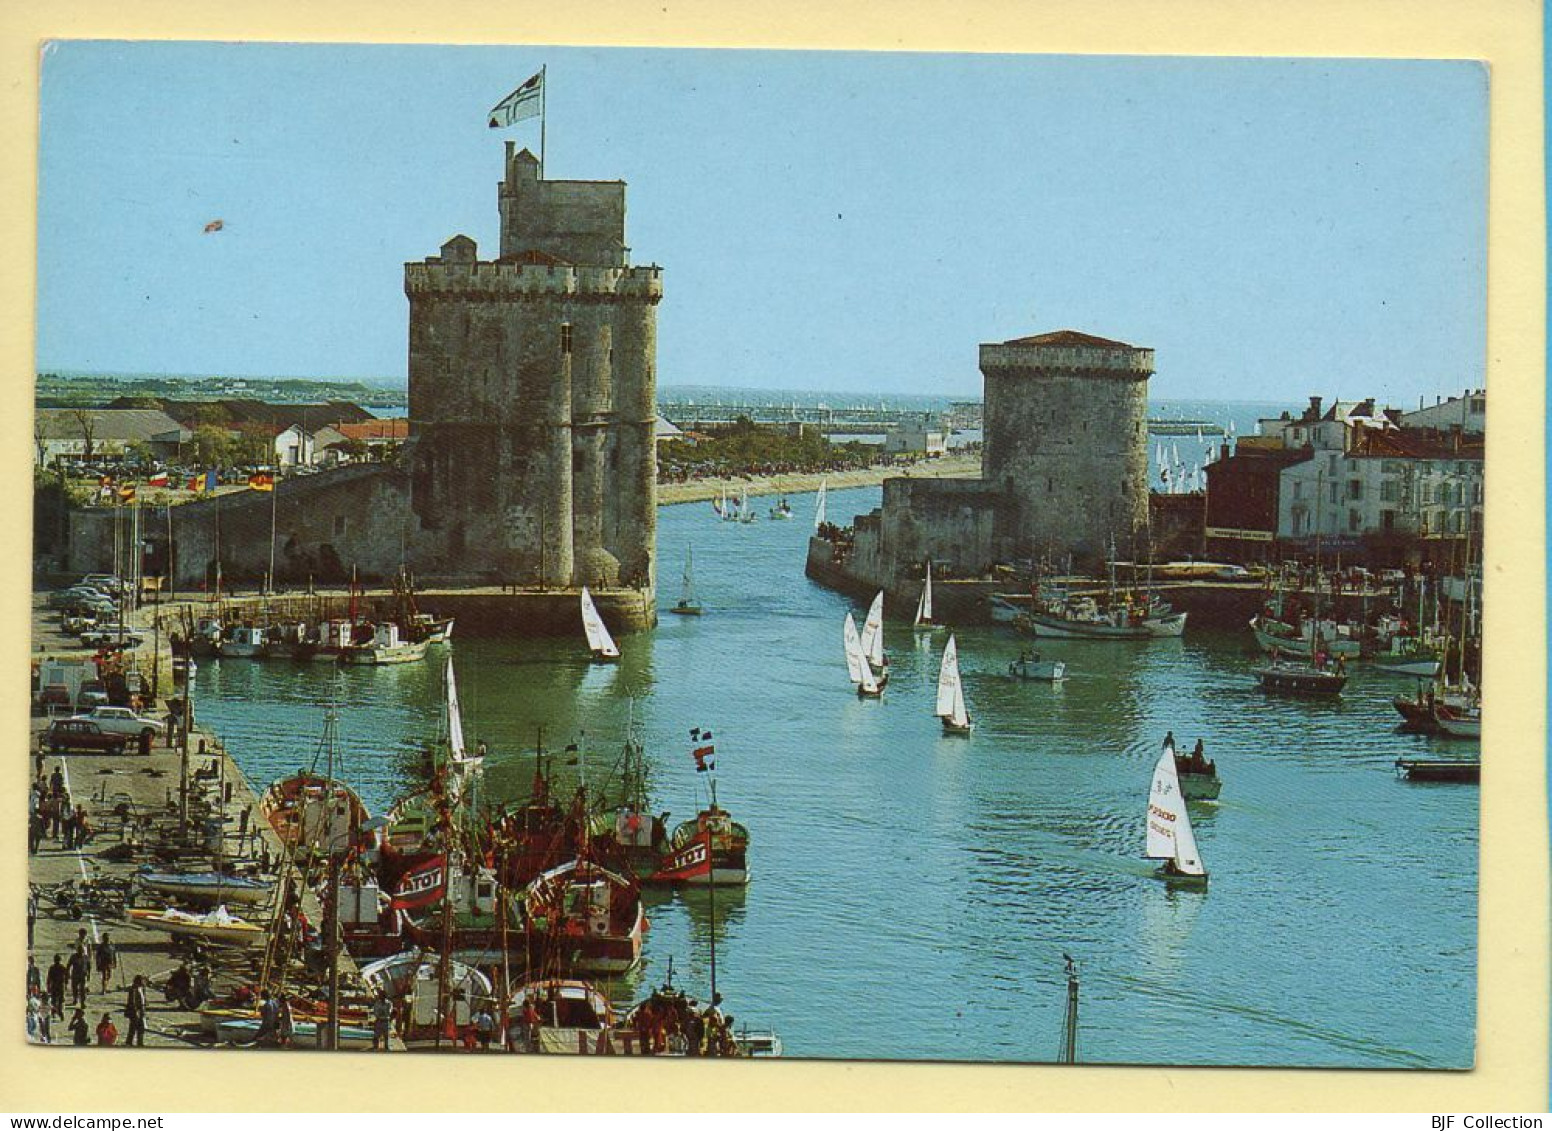 17. LA ROCHELLE – Le Port / Les Tours St-Nicolas Et De La Chaîne (animée / Bateaux / Voitures) (voir Scan Recto/verso) - La Rochelle